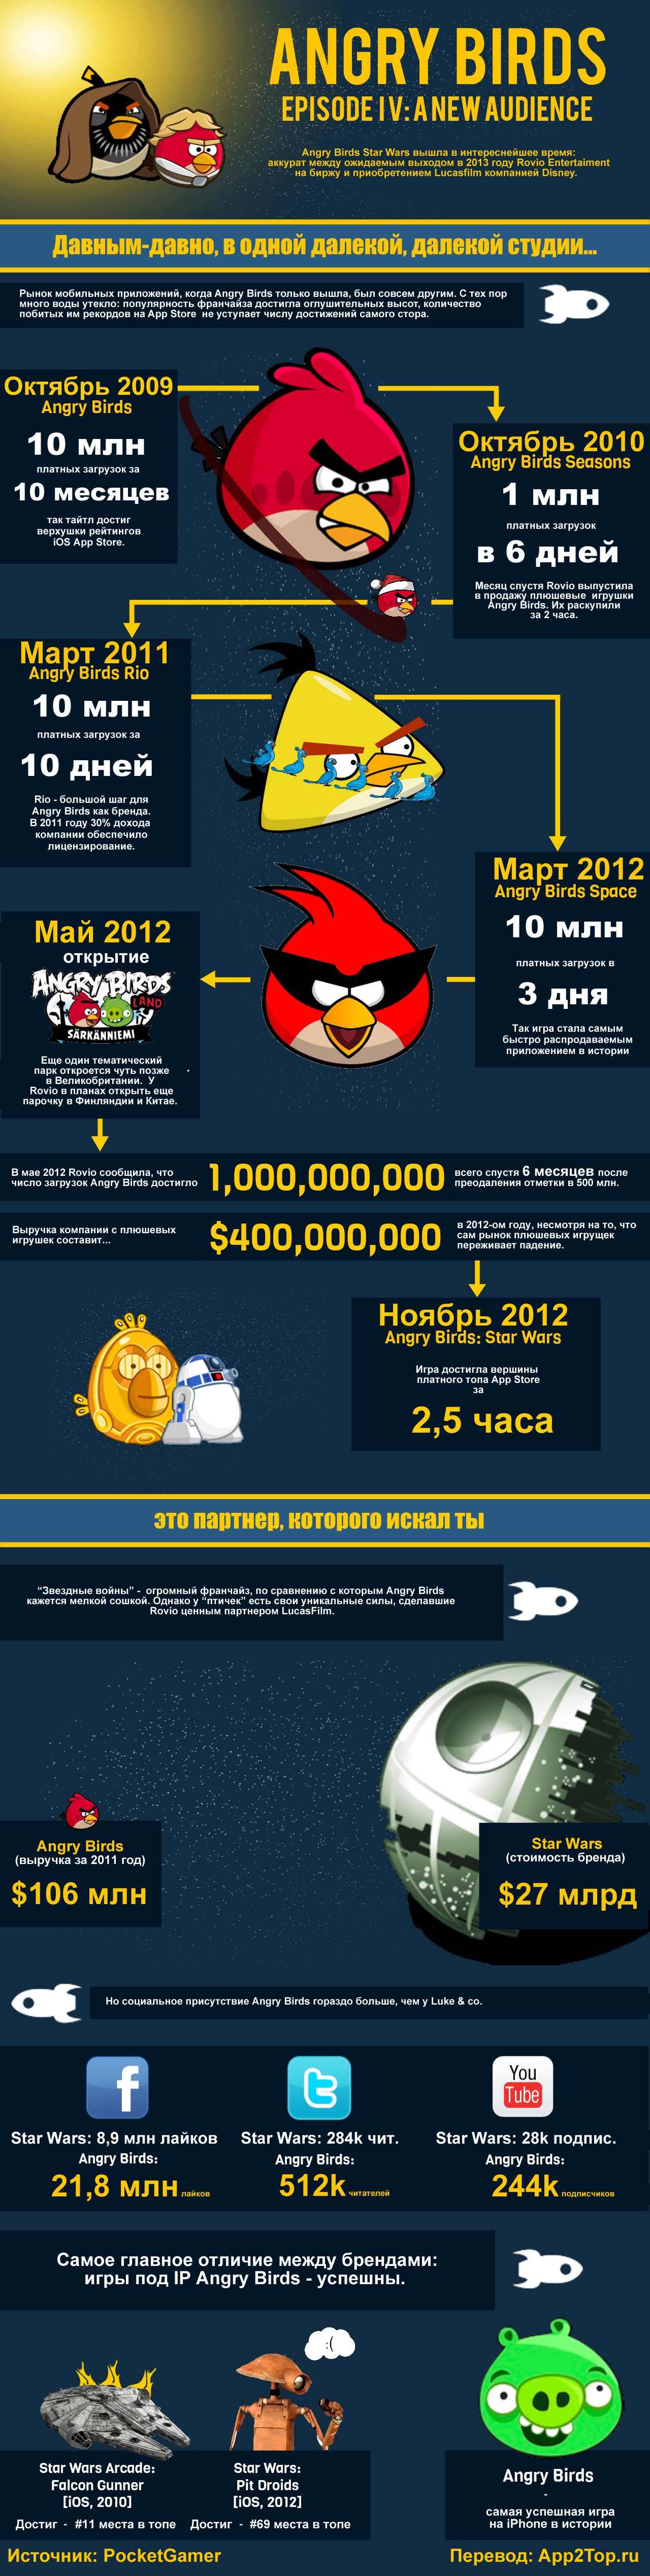 Инфографика: история успеха Angry Birds в картинках